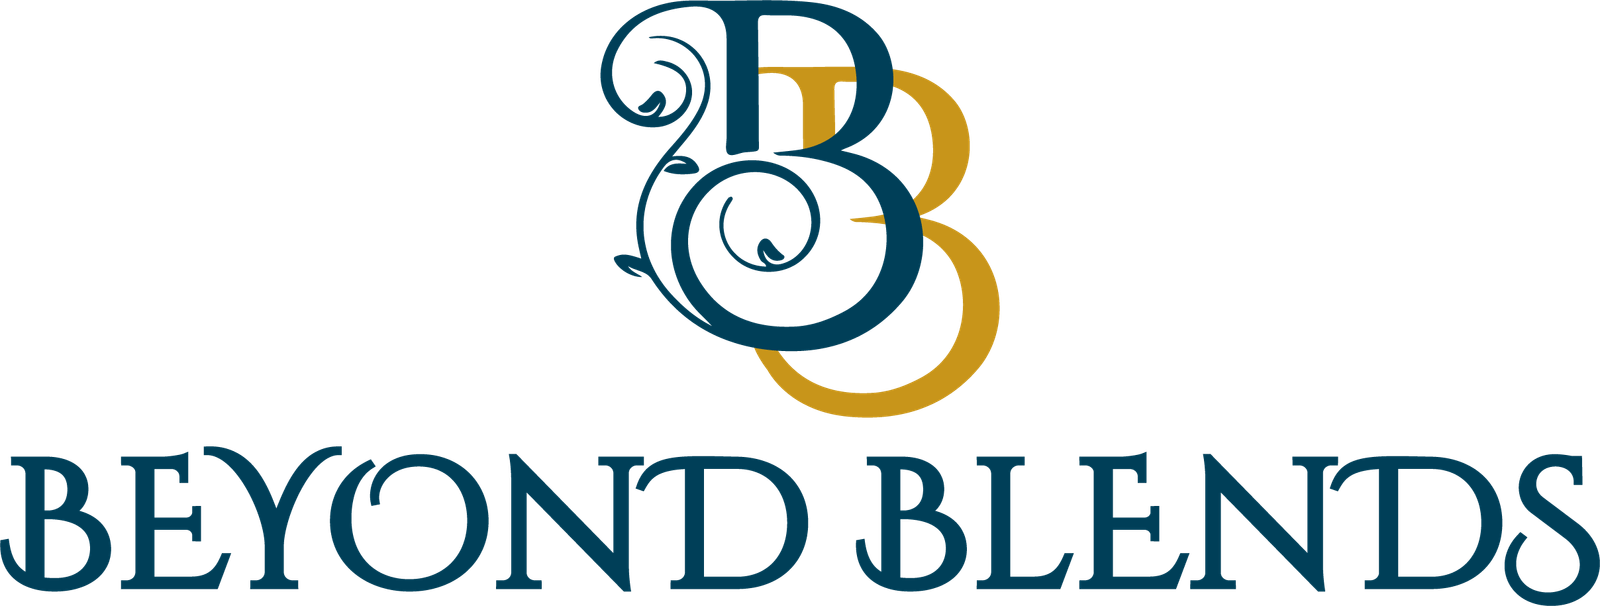 BB logo English